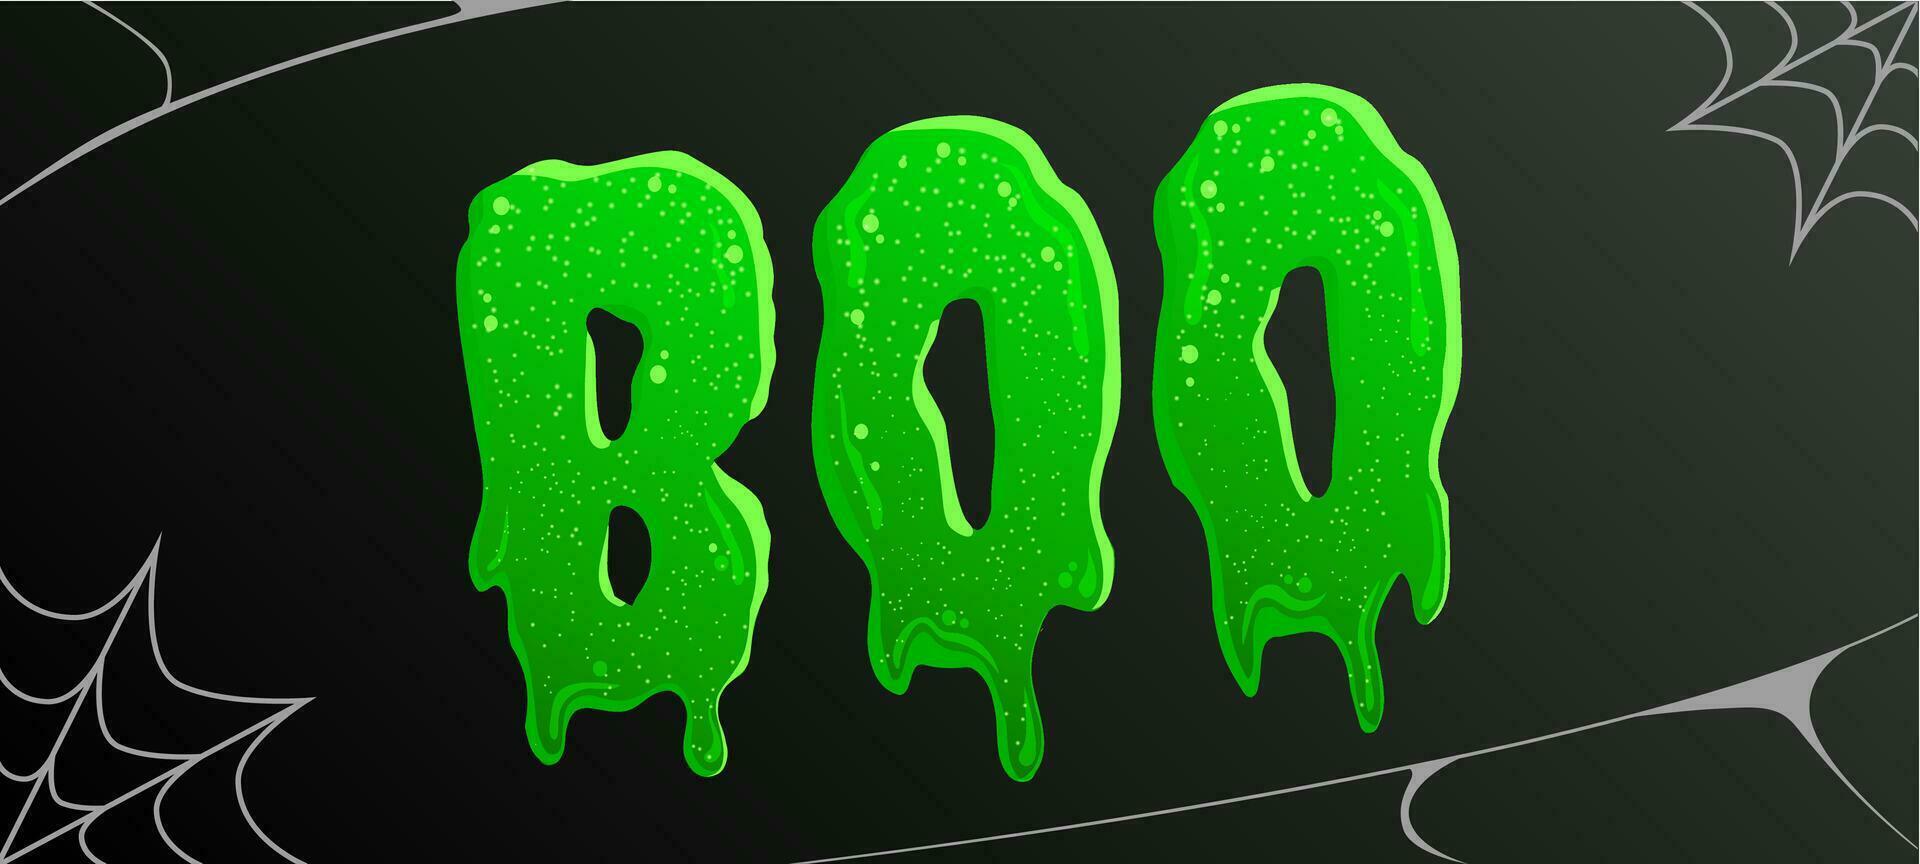 halloween griezelig donker banier met boe woord, groen vloeistof belettering, zombie slijm plons, vector kunst.